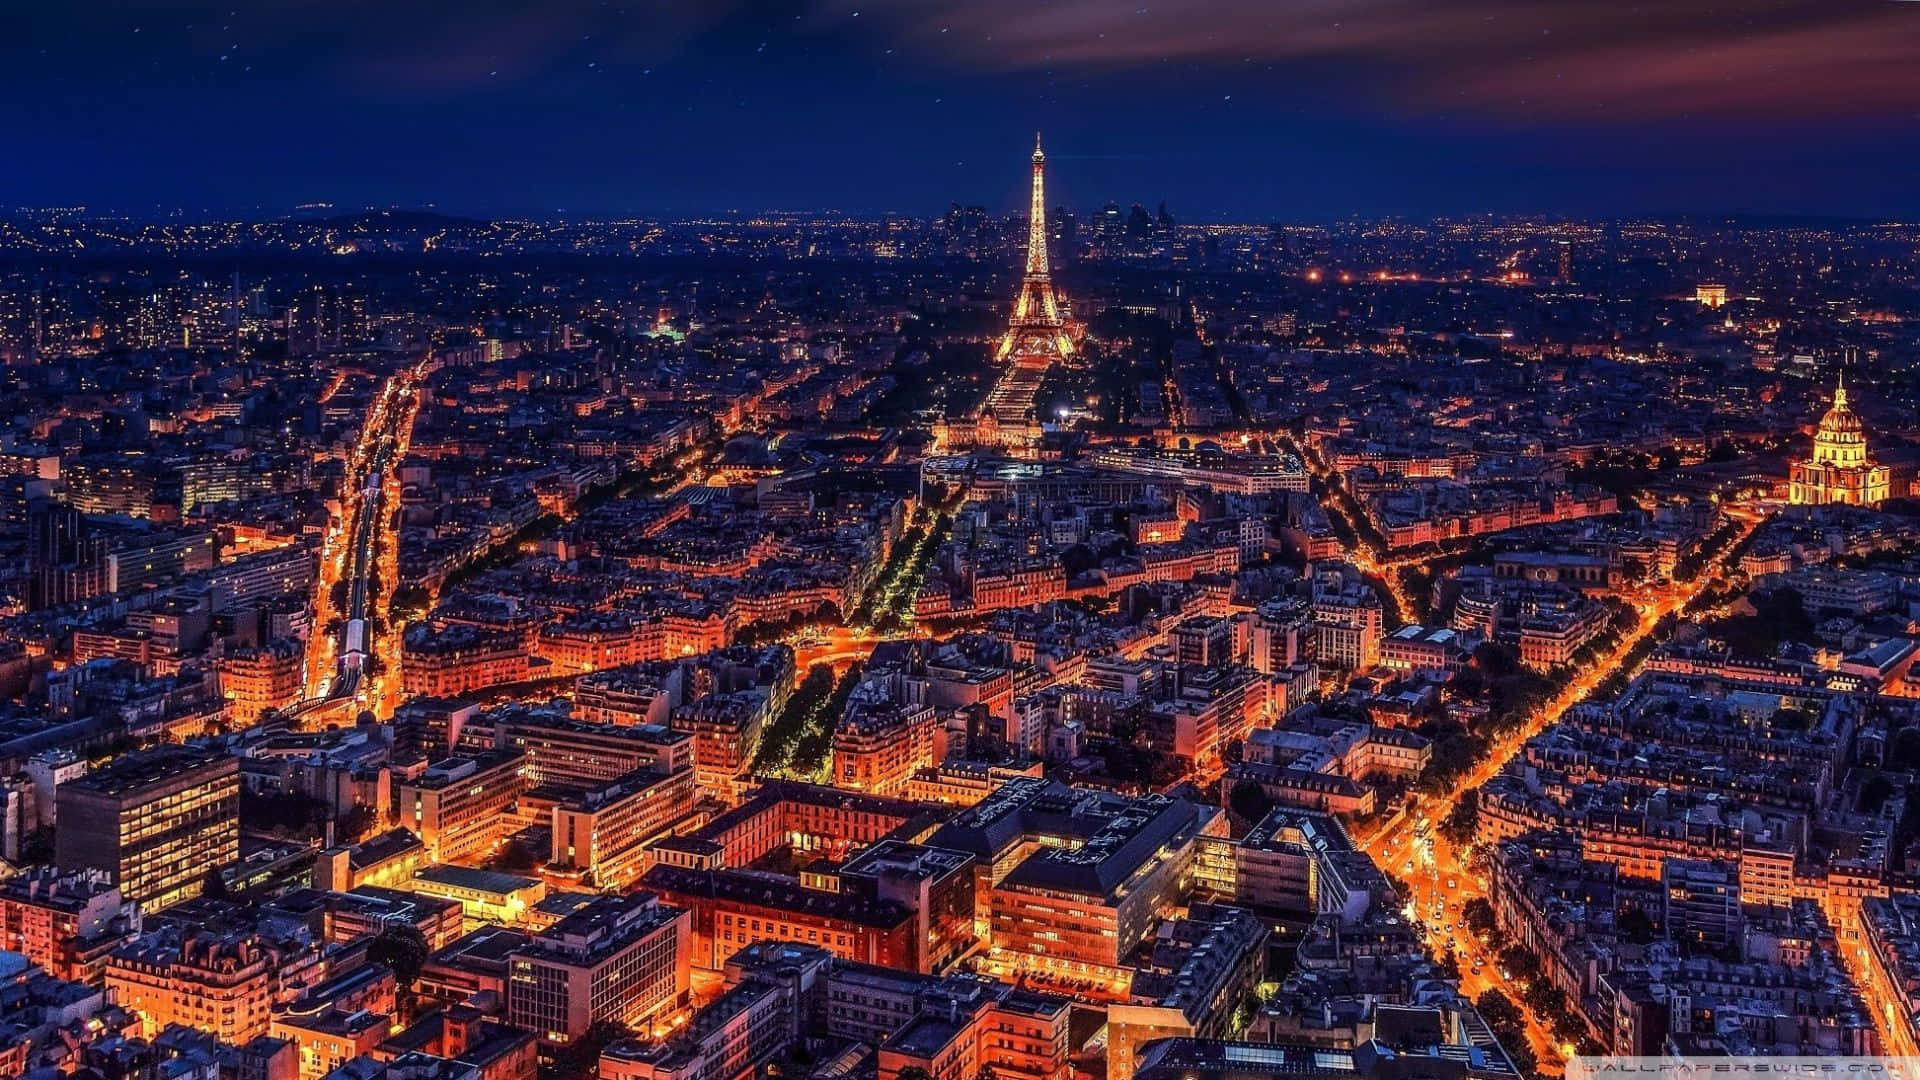 Majestätischerbeleuchteter Eiffelturm Bei Nacht In Paris Wallpaper